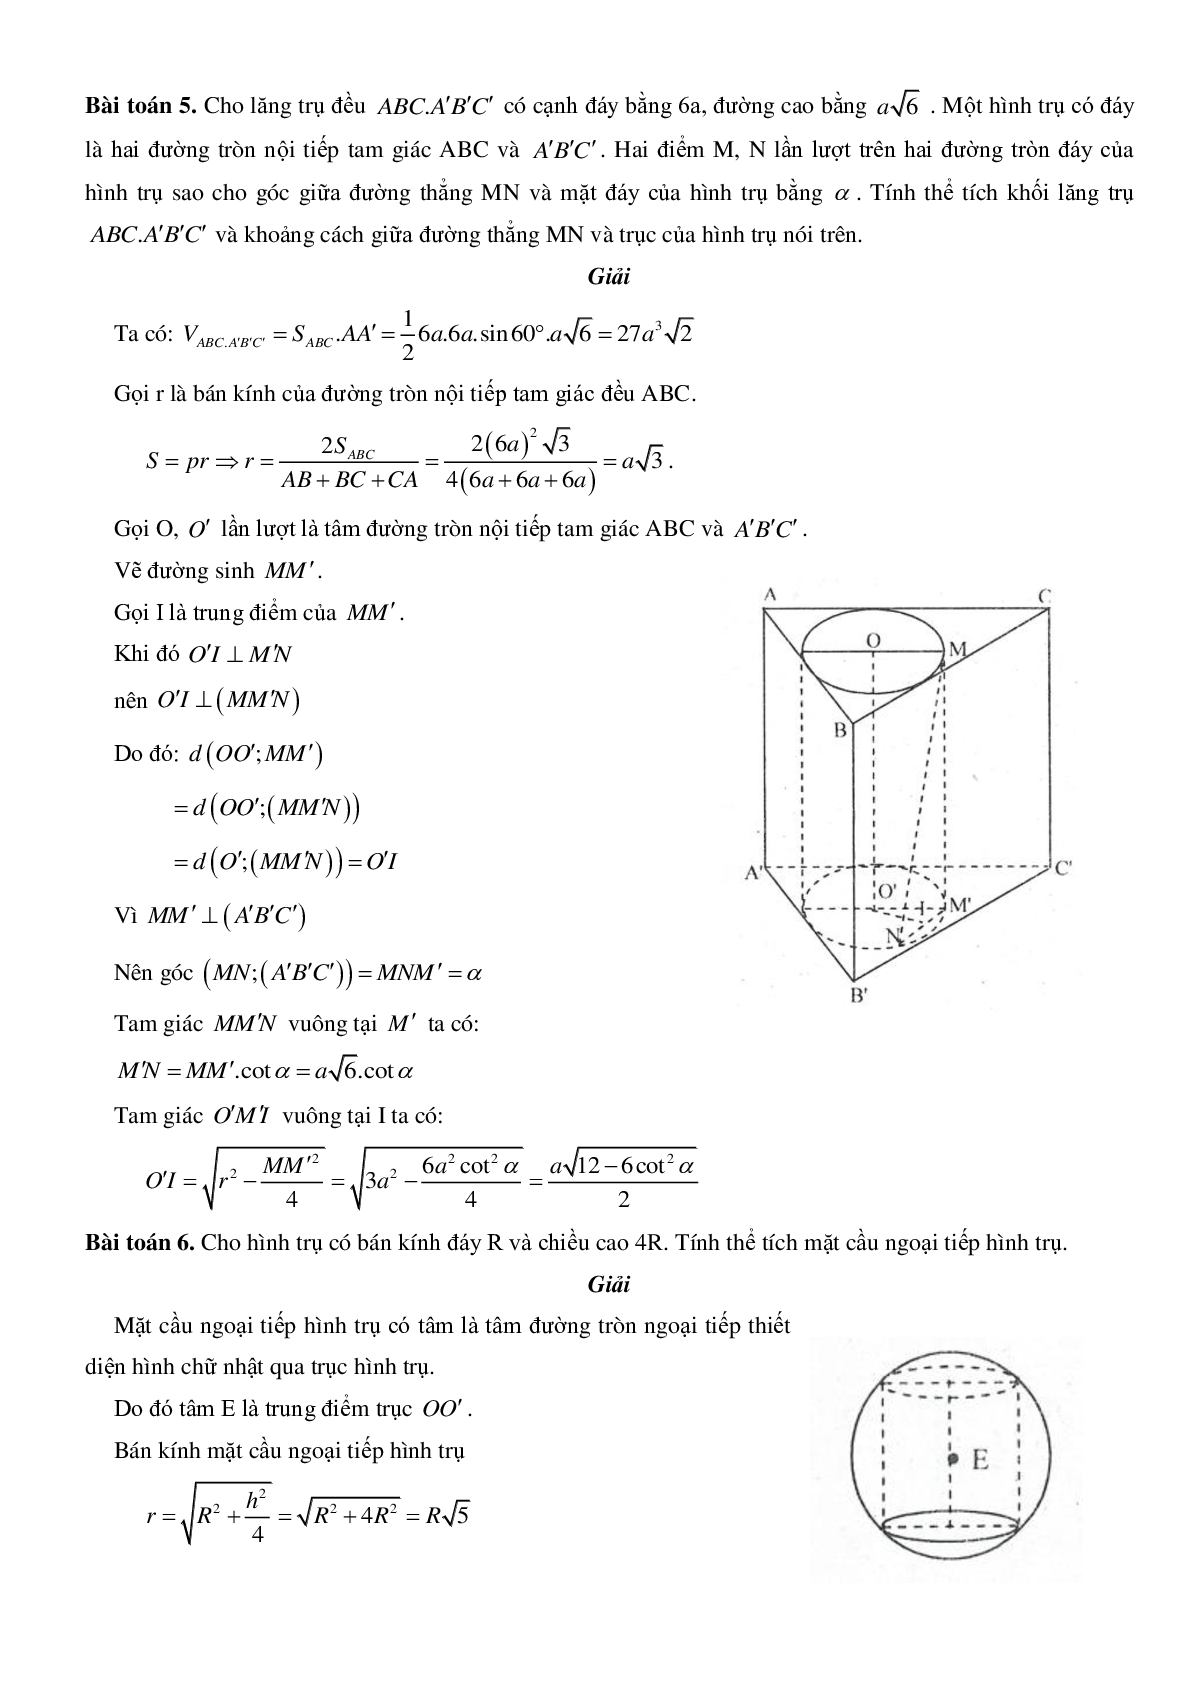 Mặt trụ - Hình trụ - Khối trụ - Ôn thi THPT QG môn toán (trang 6)